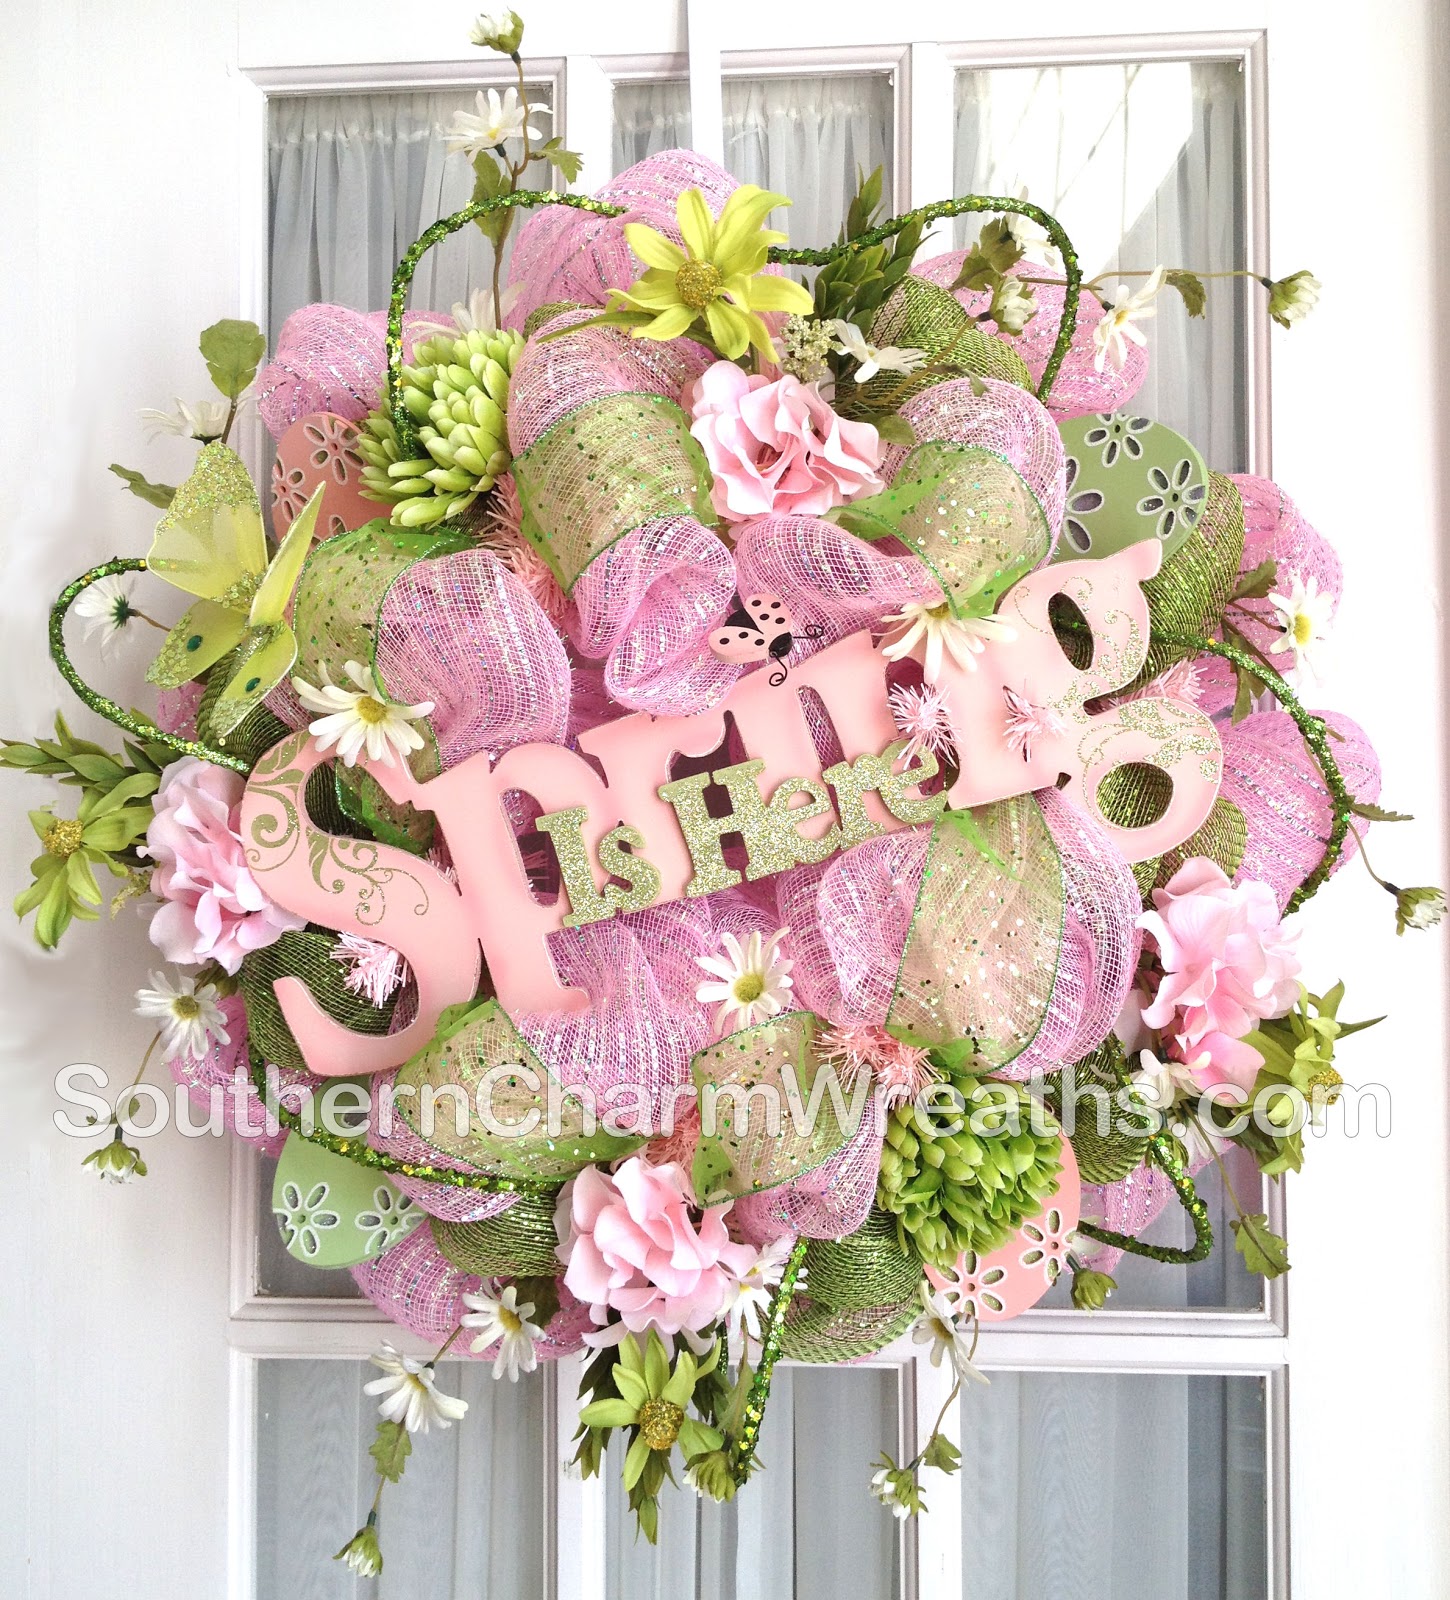 http://1.bp.blogspot.com/-fqWlgOvpkVU/T09z-6s0r6I/AAAAAAAAArc/jBnmEnAeMGQ/s1600/deco-mesh-wreath-spring-pink-green-flowers-1.jpg